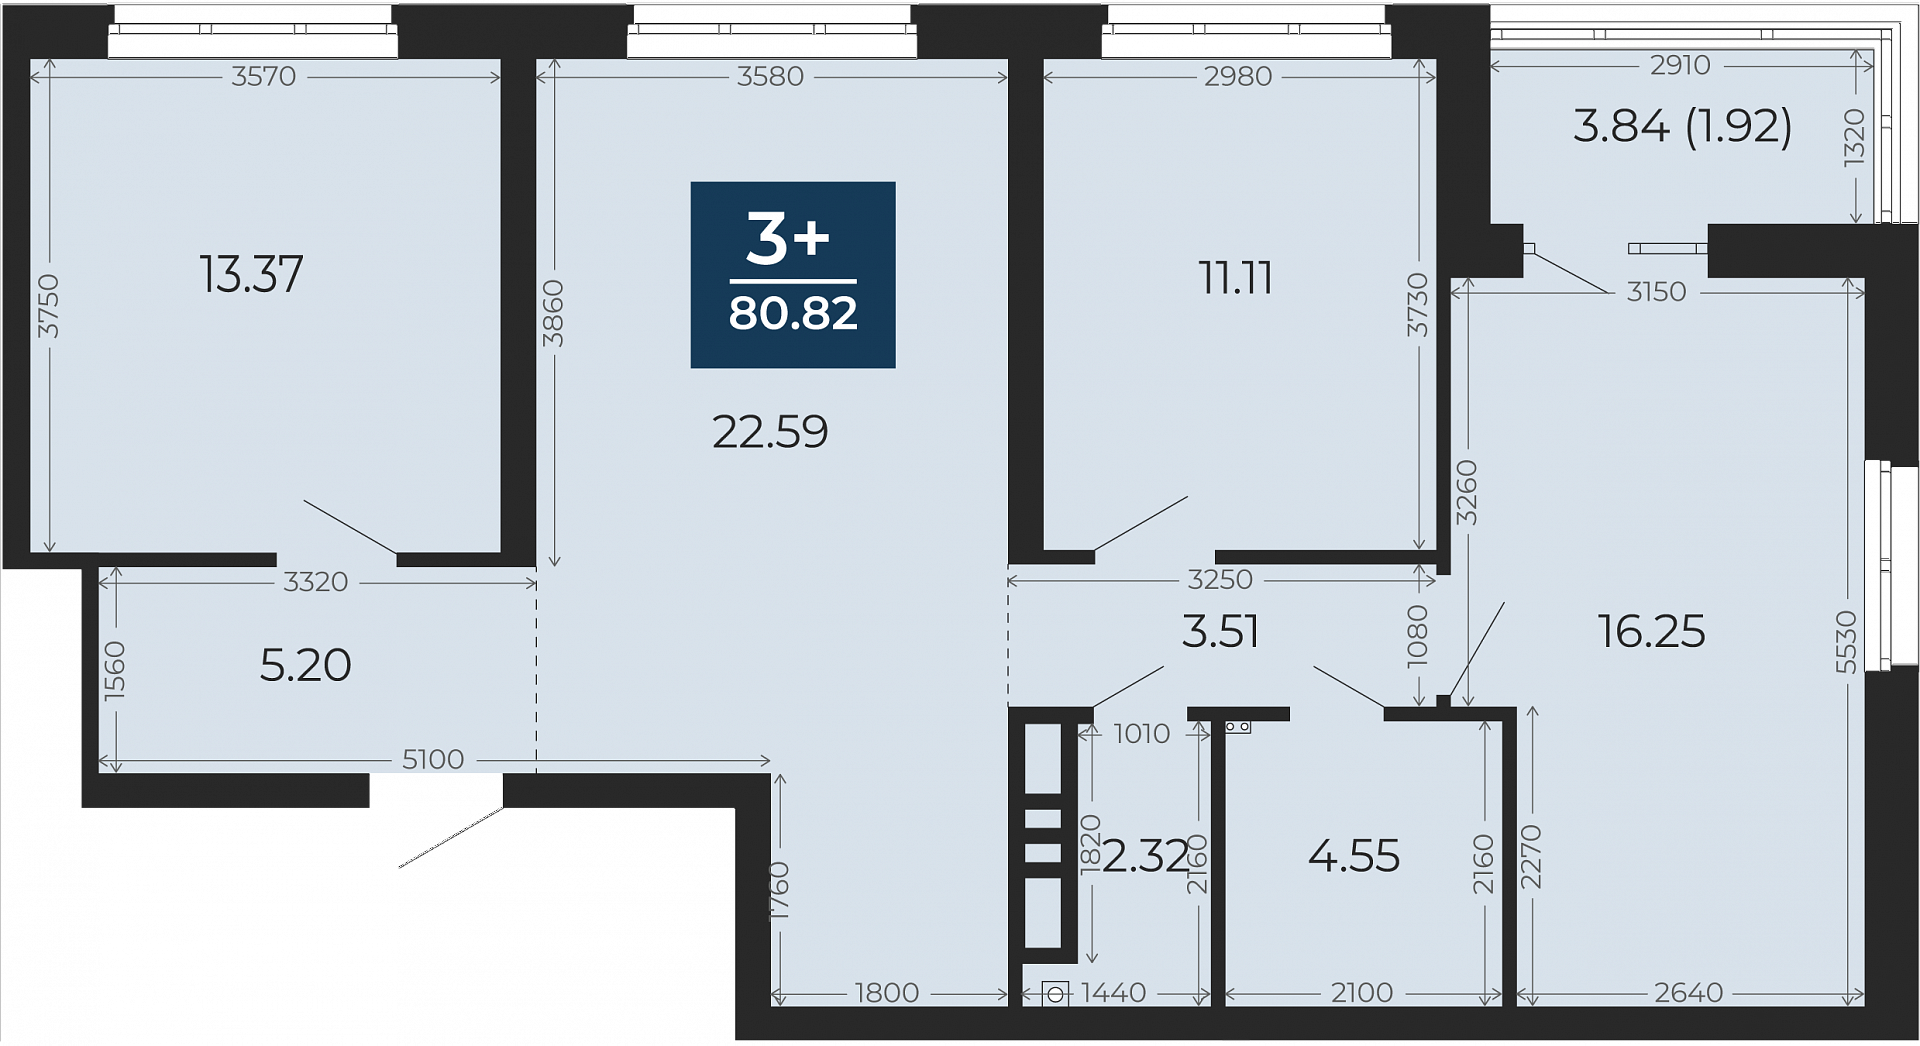 Квартира № 355, 3-комнатная, 80.82 кв. м, 3 этаж